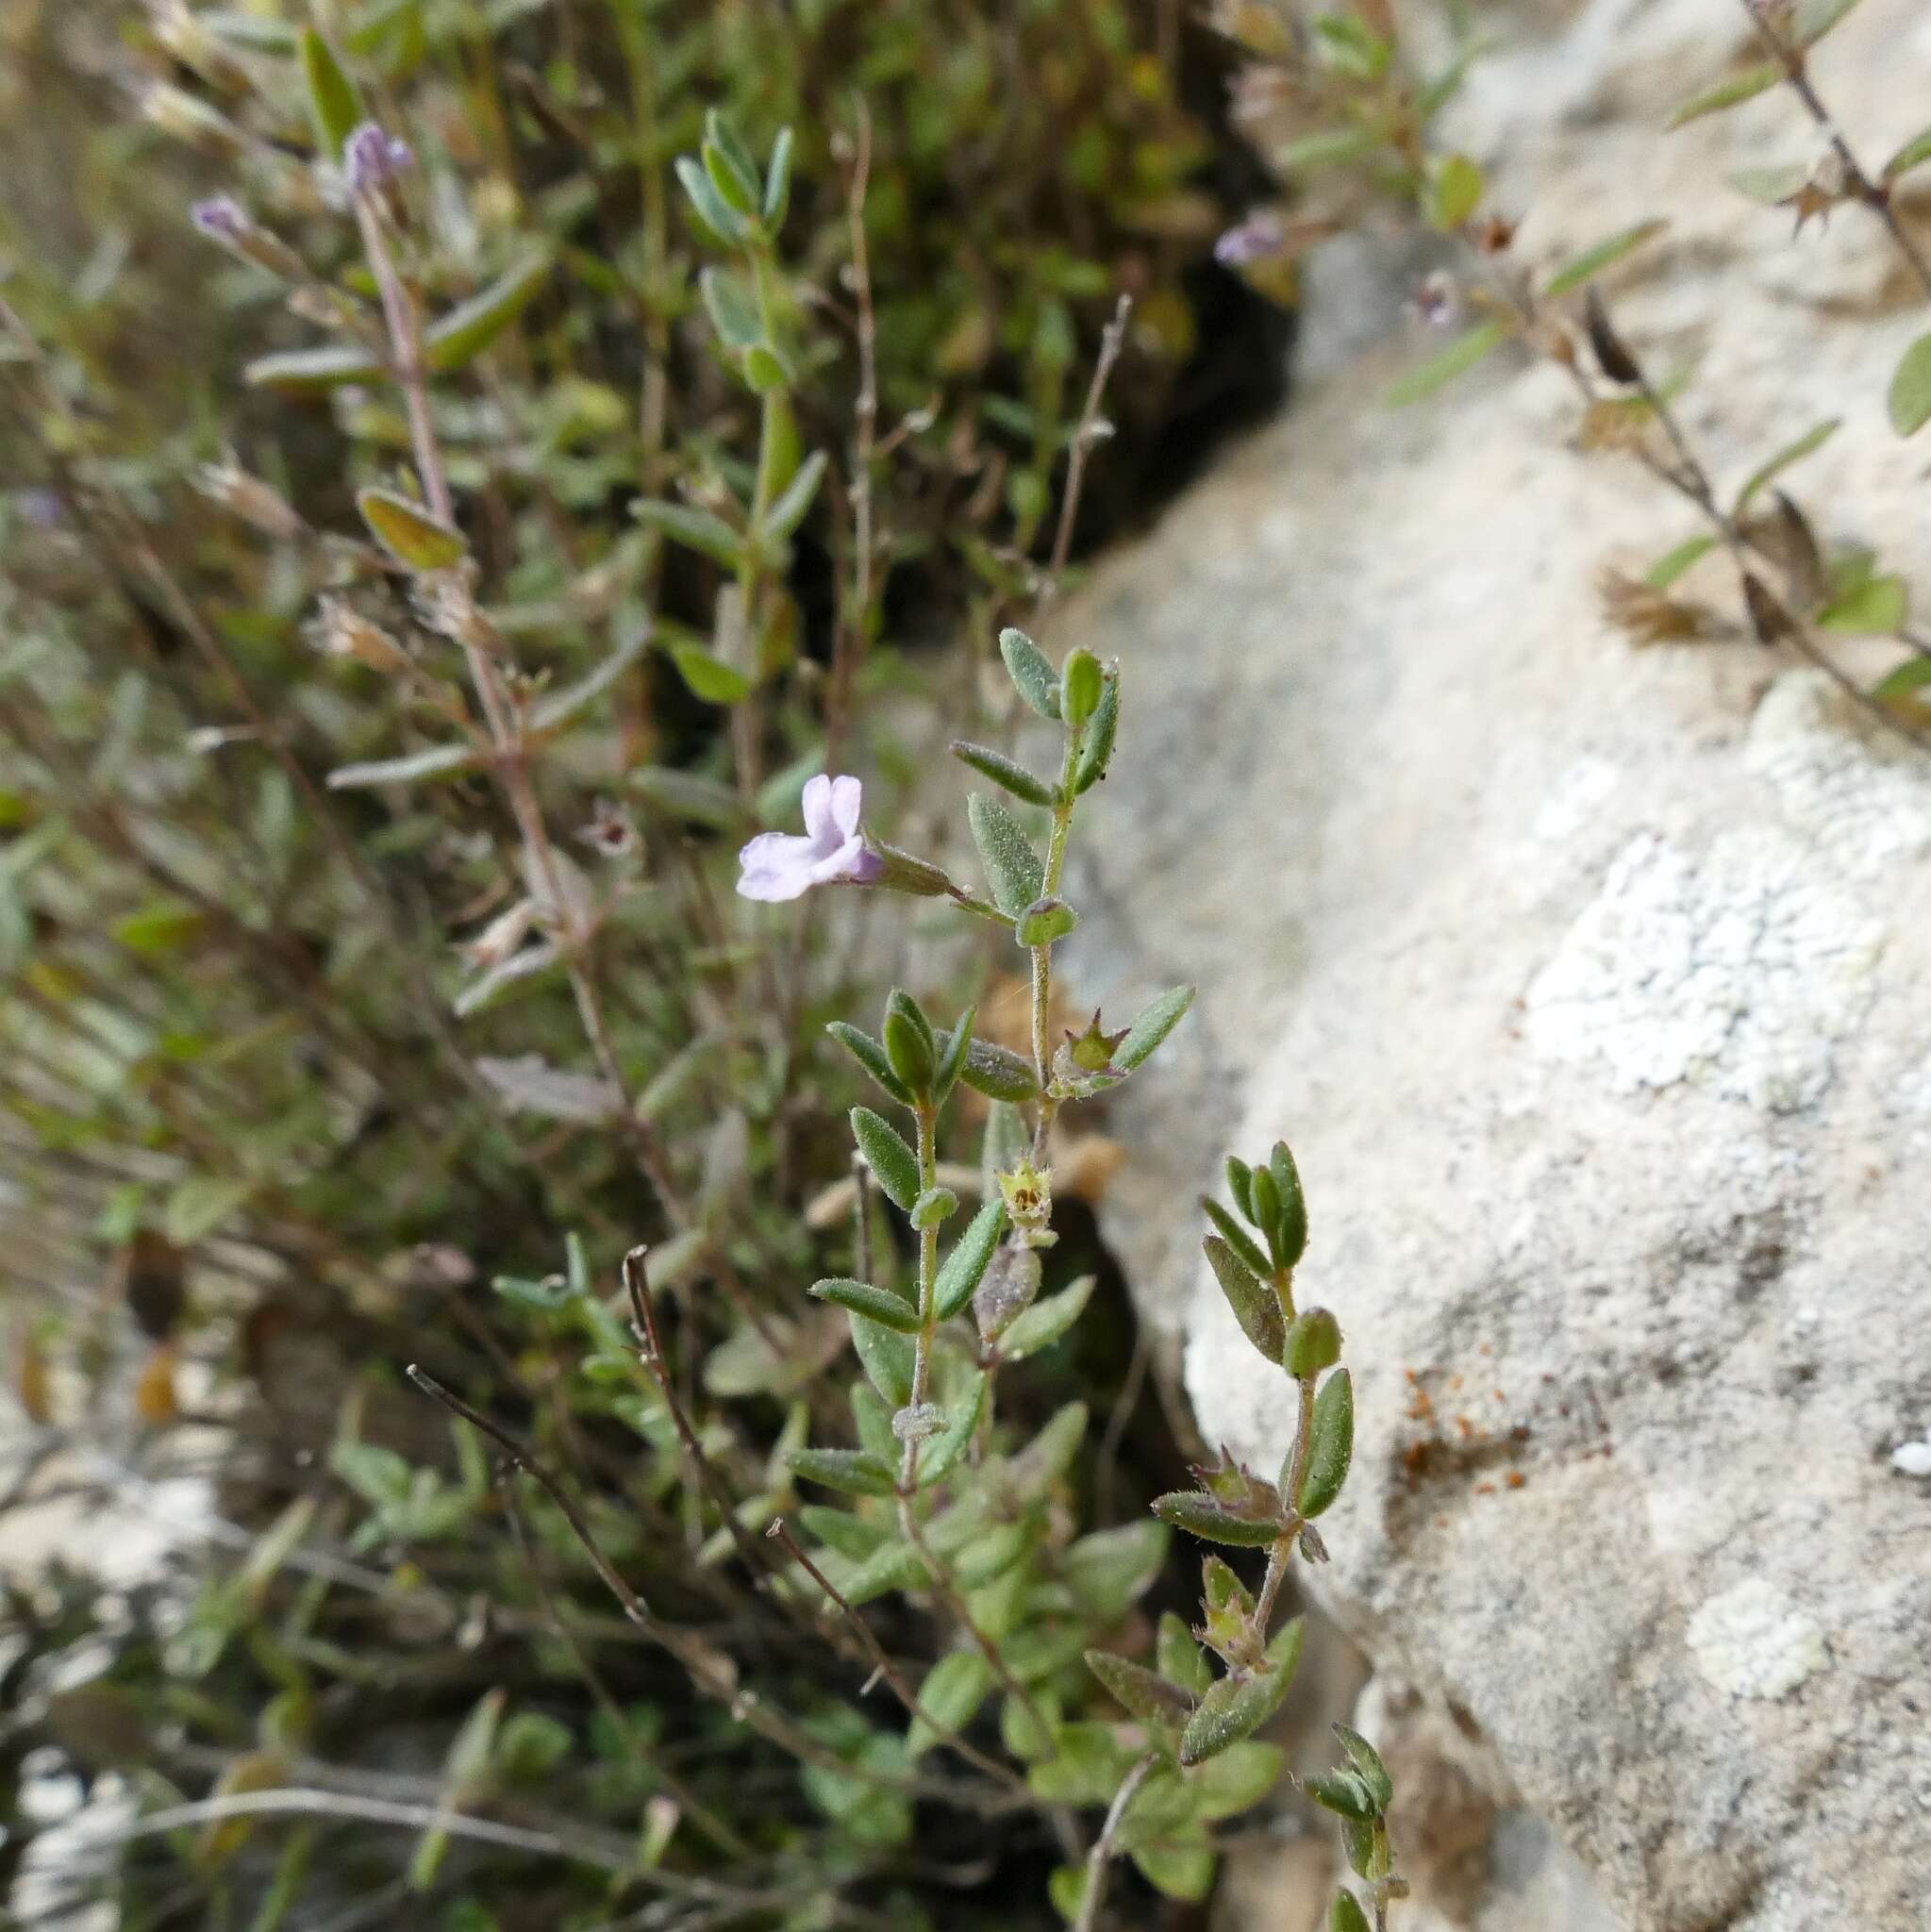 Image of Micromeria filiformis subsp. cordata (Moris) Pignatti